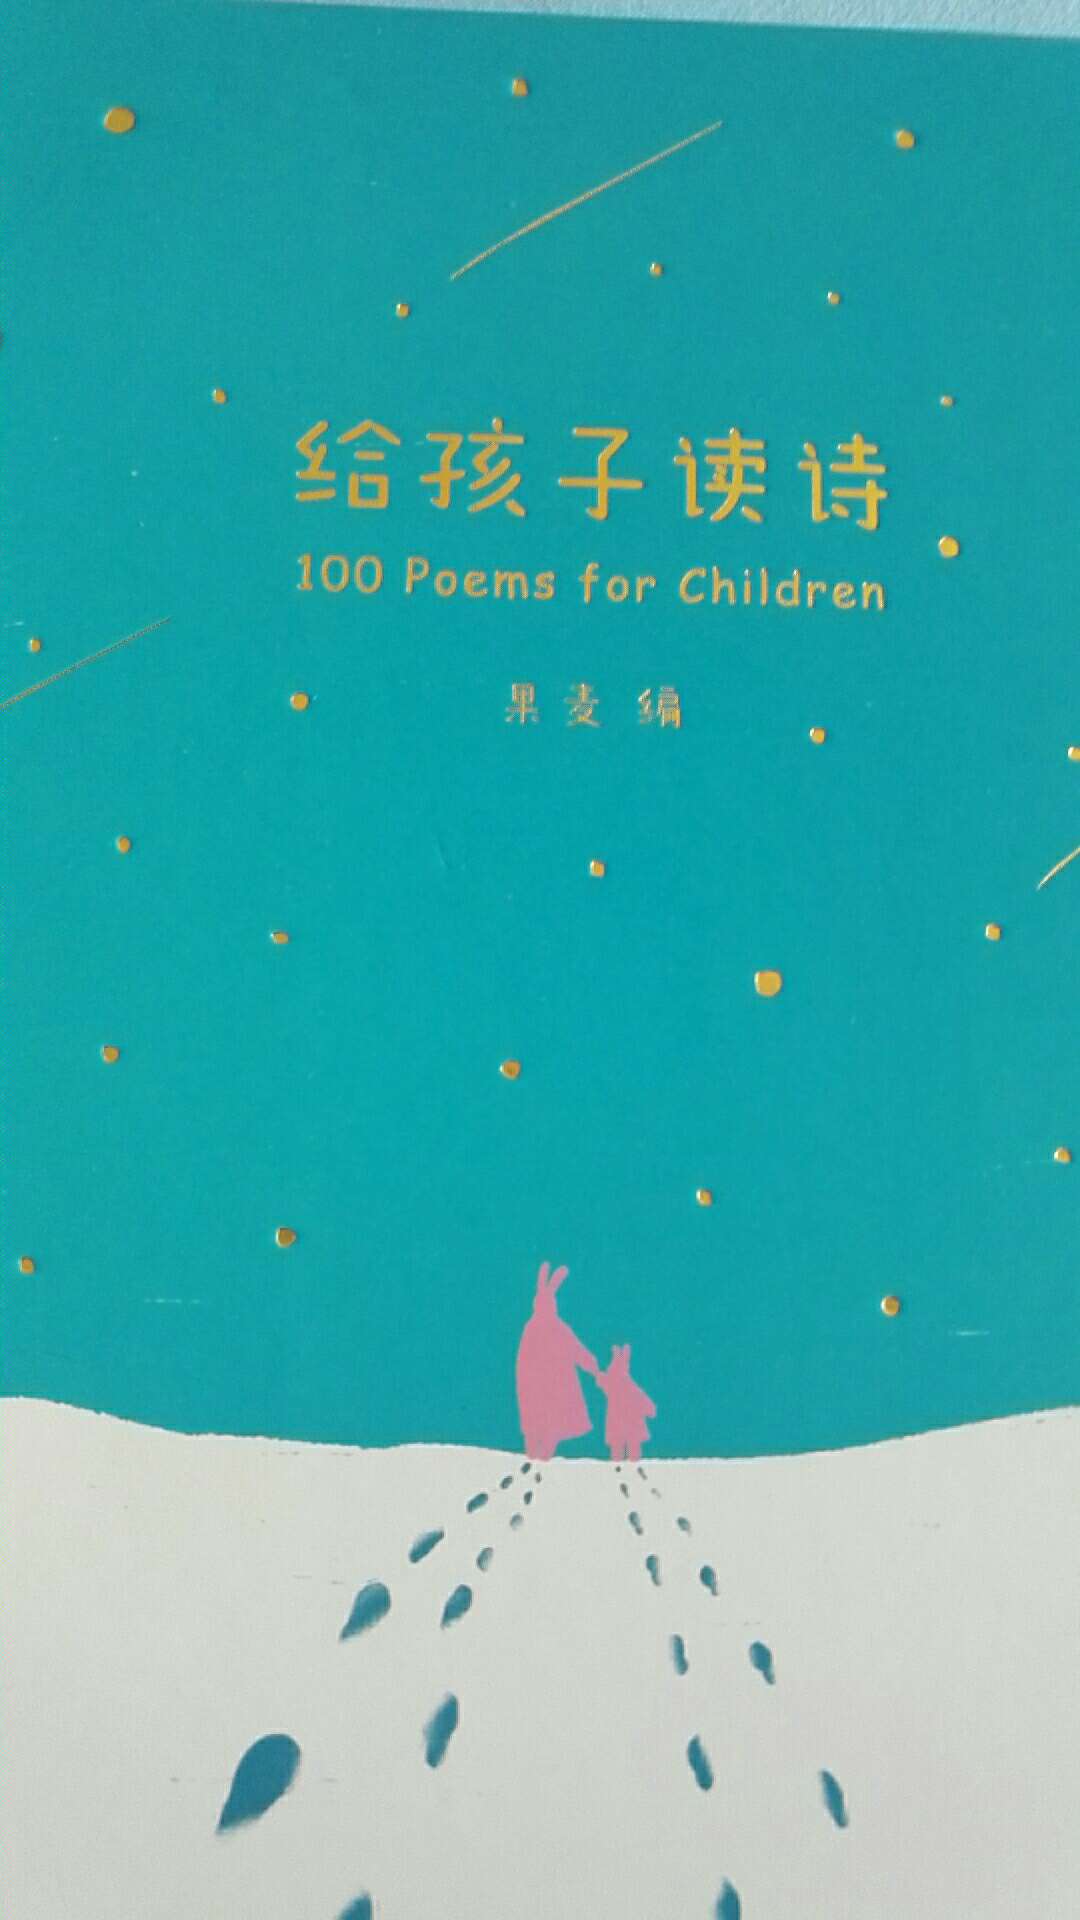 这套书里面感觉只有《给孩子读诗》这一本适合5岁以上孩子，其他几本适合三岁左右的宝宝